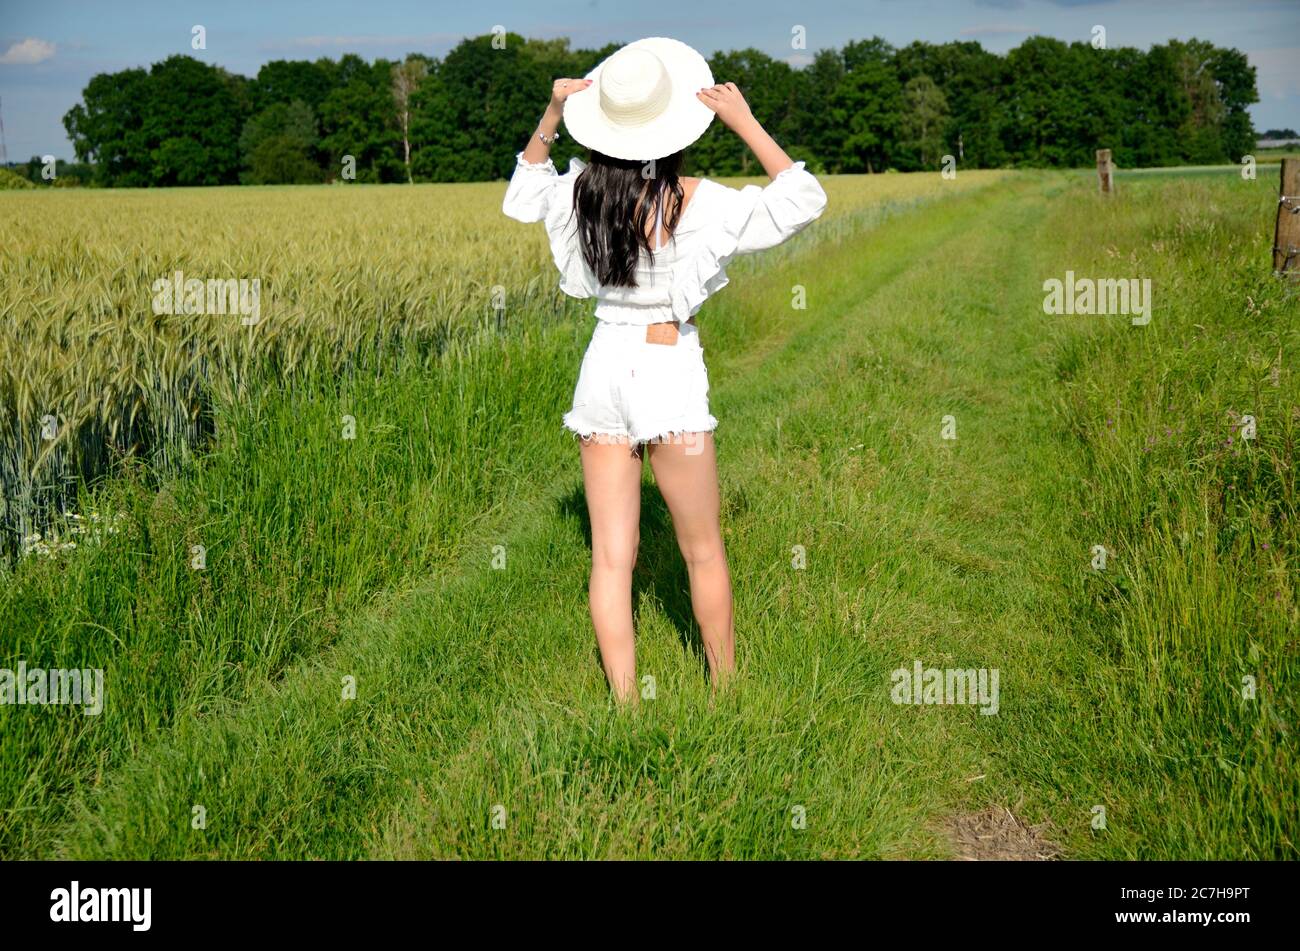 Une fille pieds nus marchant sur l'herbe verte. Femme avec chapeau, short blanc et haut blanc. Été en Pologne, belle terre agricole en Basse Silésie. Banque D'Images